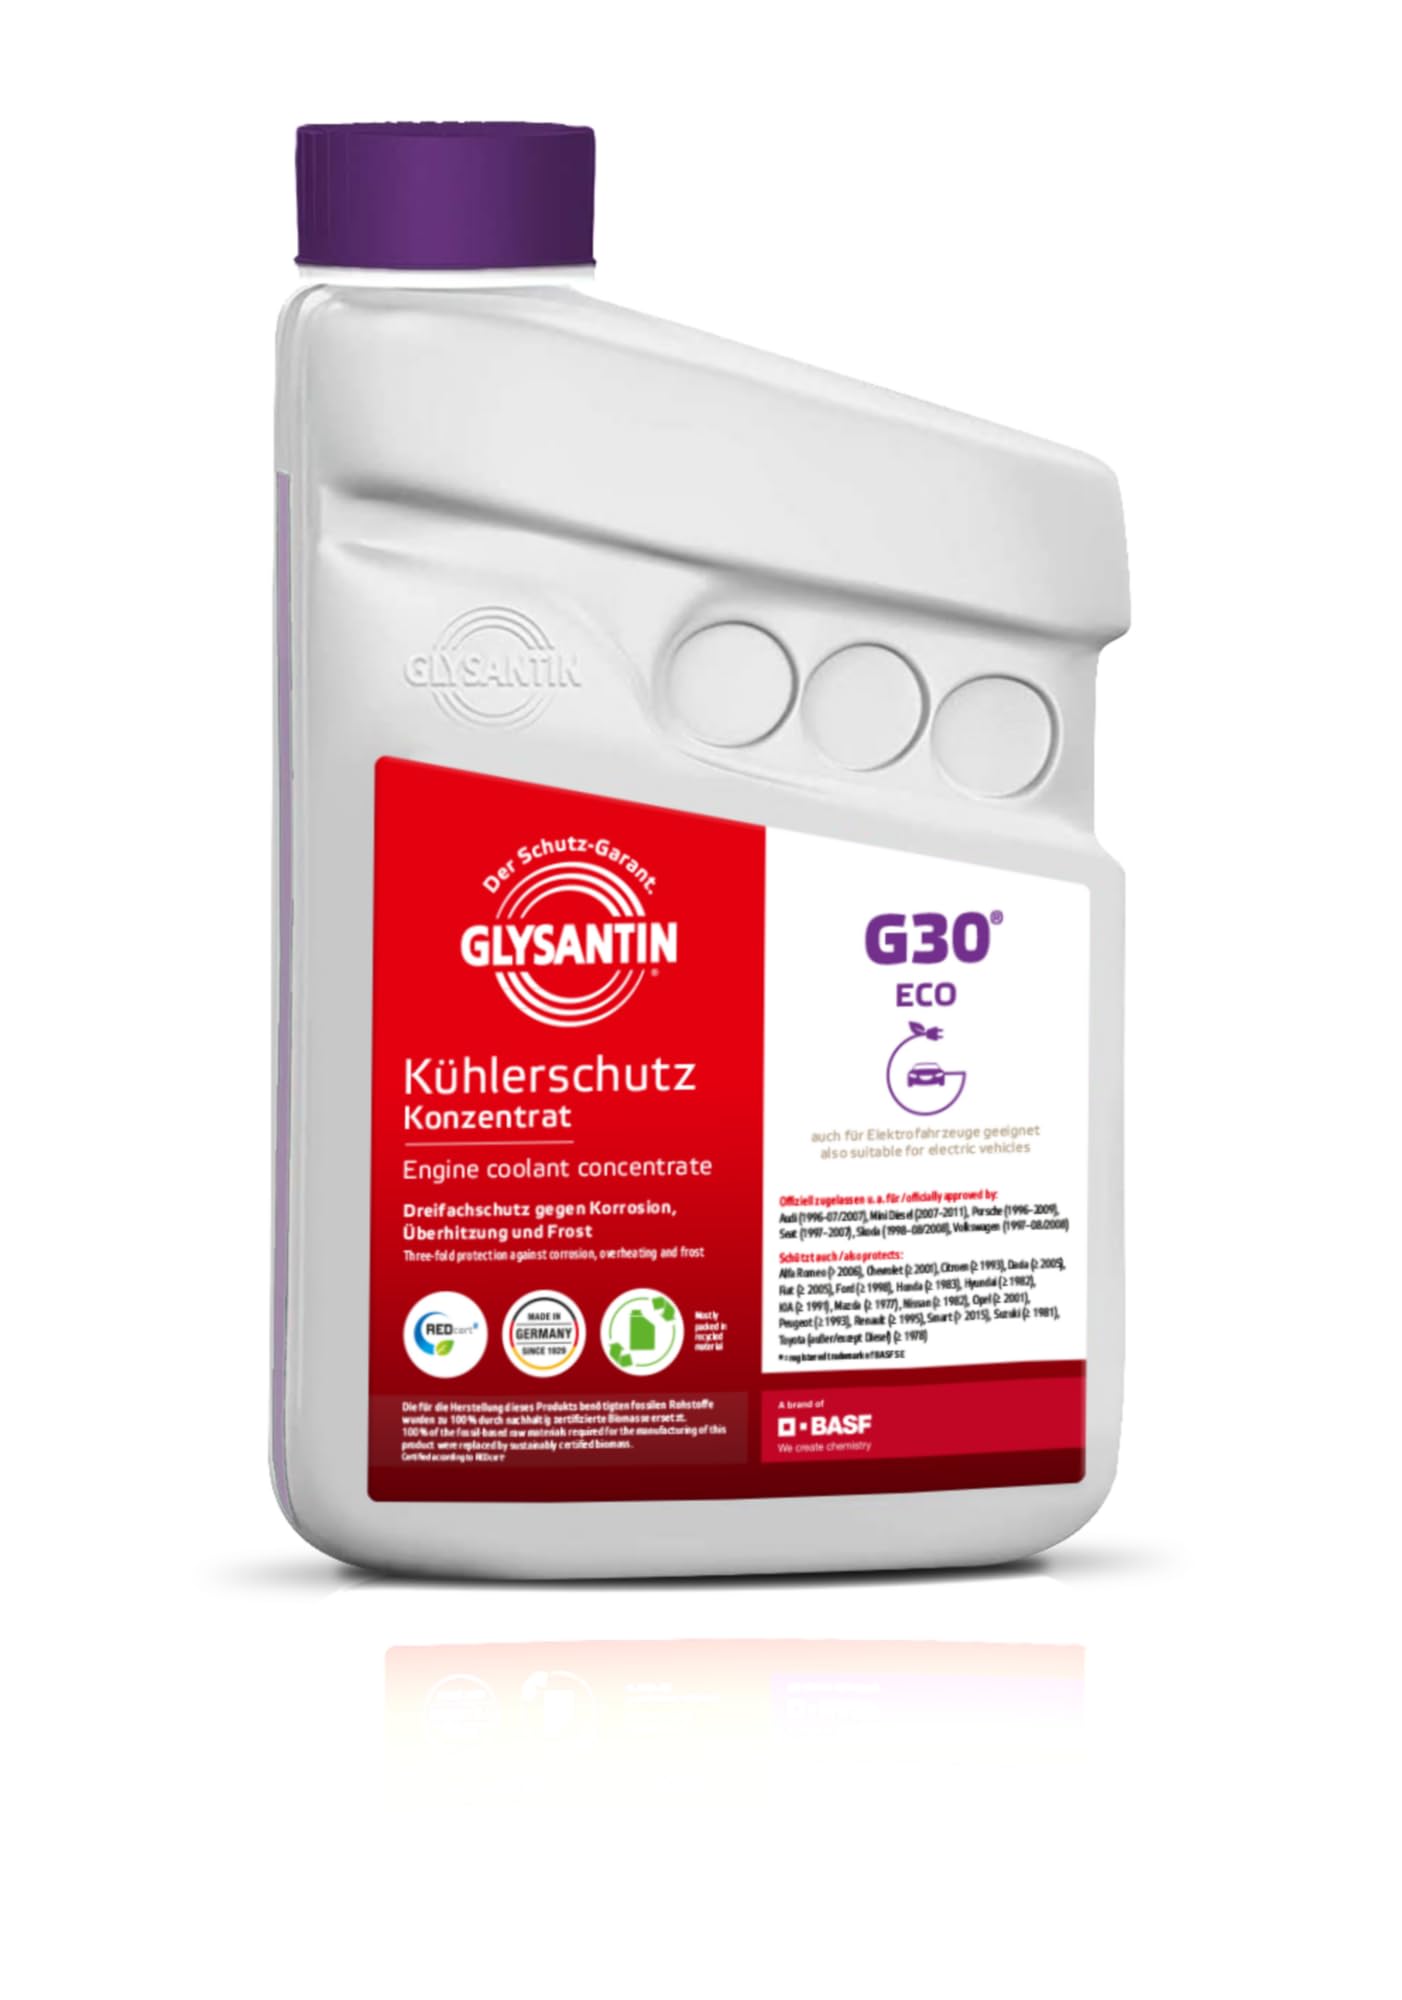 Glysantin G30 Kühlerschutzmittel Konzentrat, ECO BMB 100, silikatfrei, pink, 1 Liter von GLYSANTIN